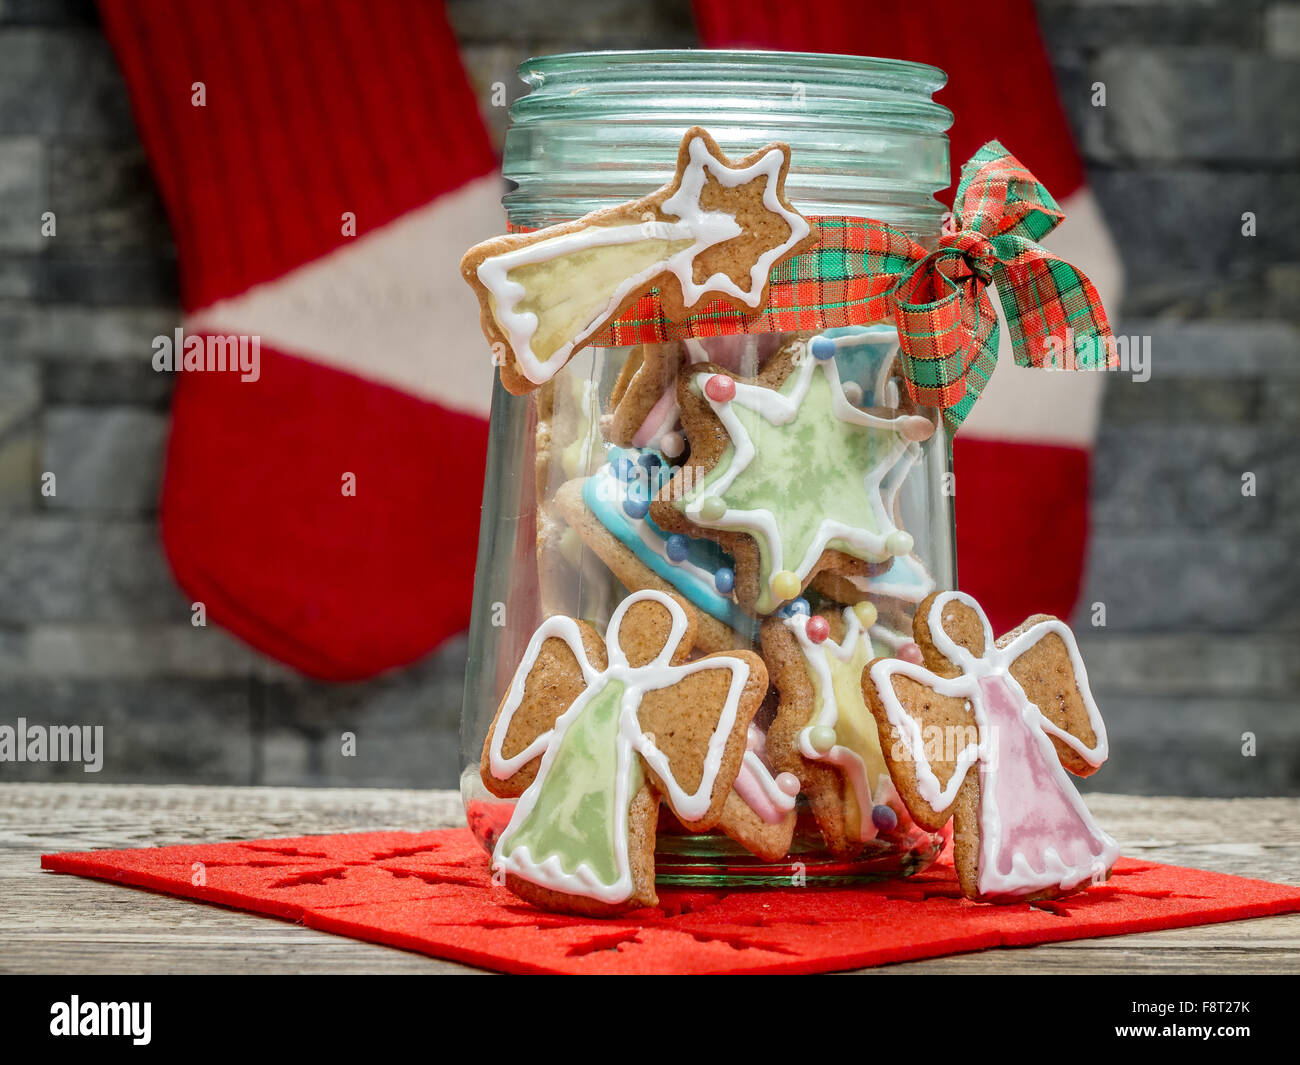 Assorted Christmas gingerbread cookies con coloridos guinda en tarro de cristal en la mesa Foto de stock